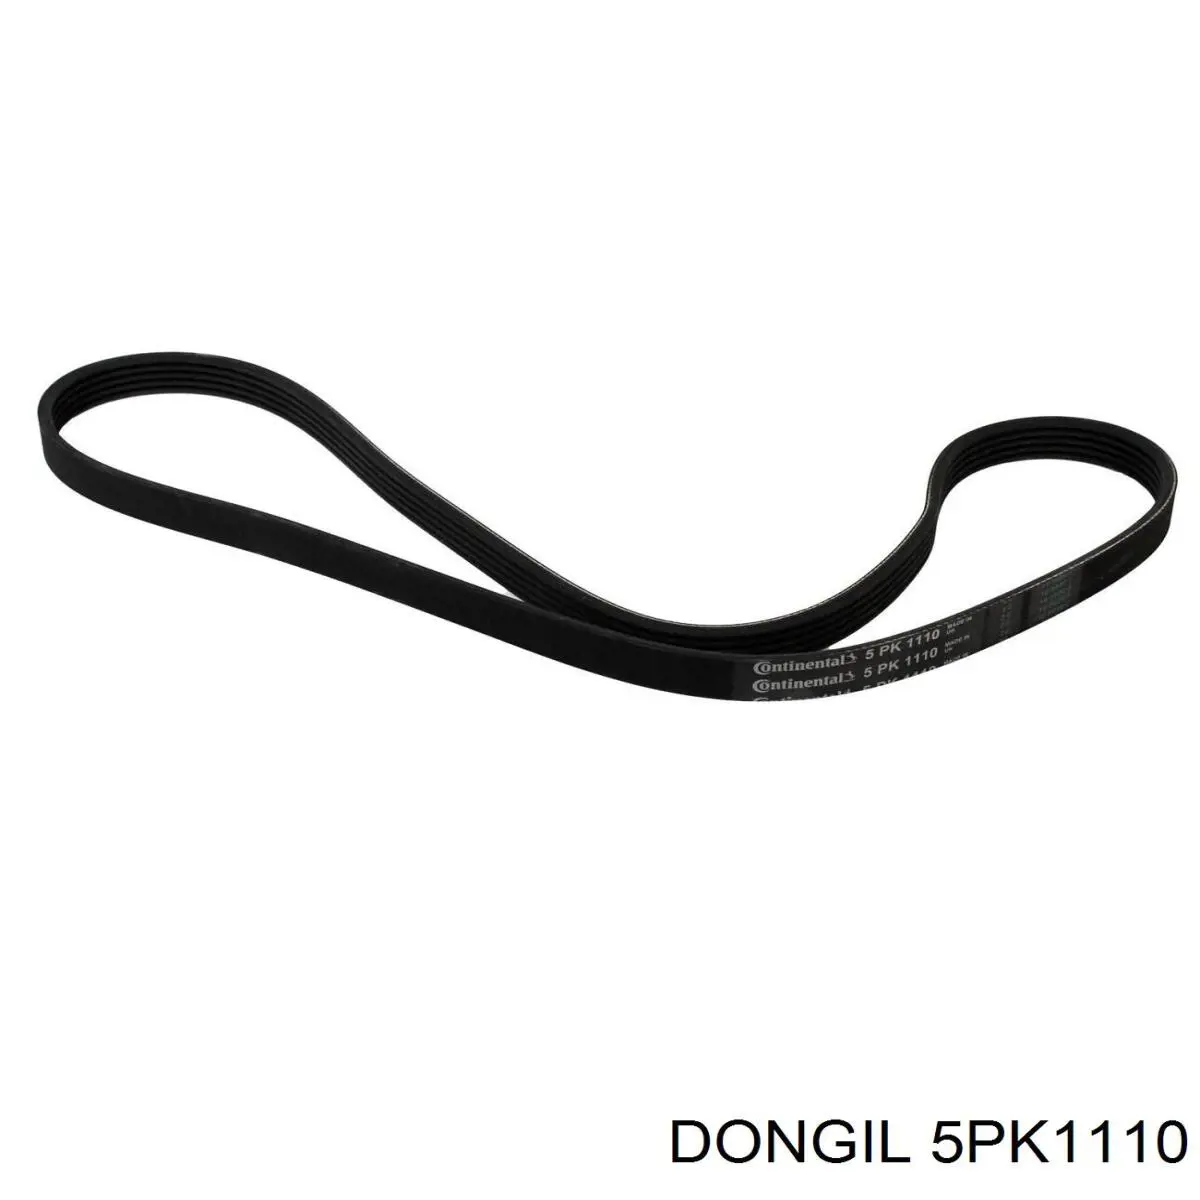 5PK1110 Dongil correa trapezoidal